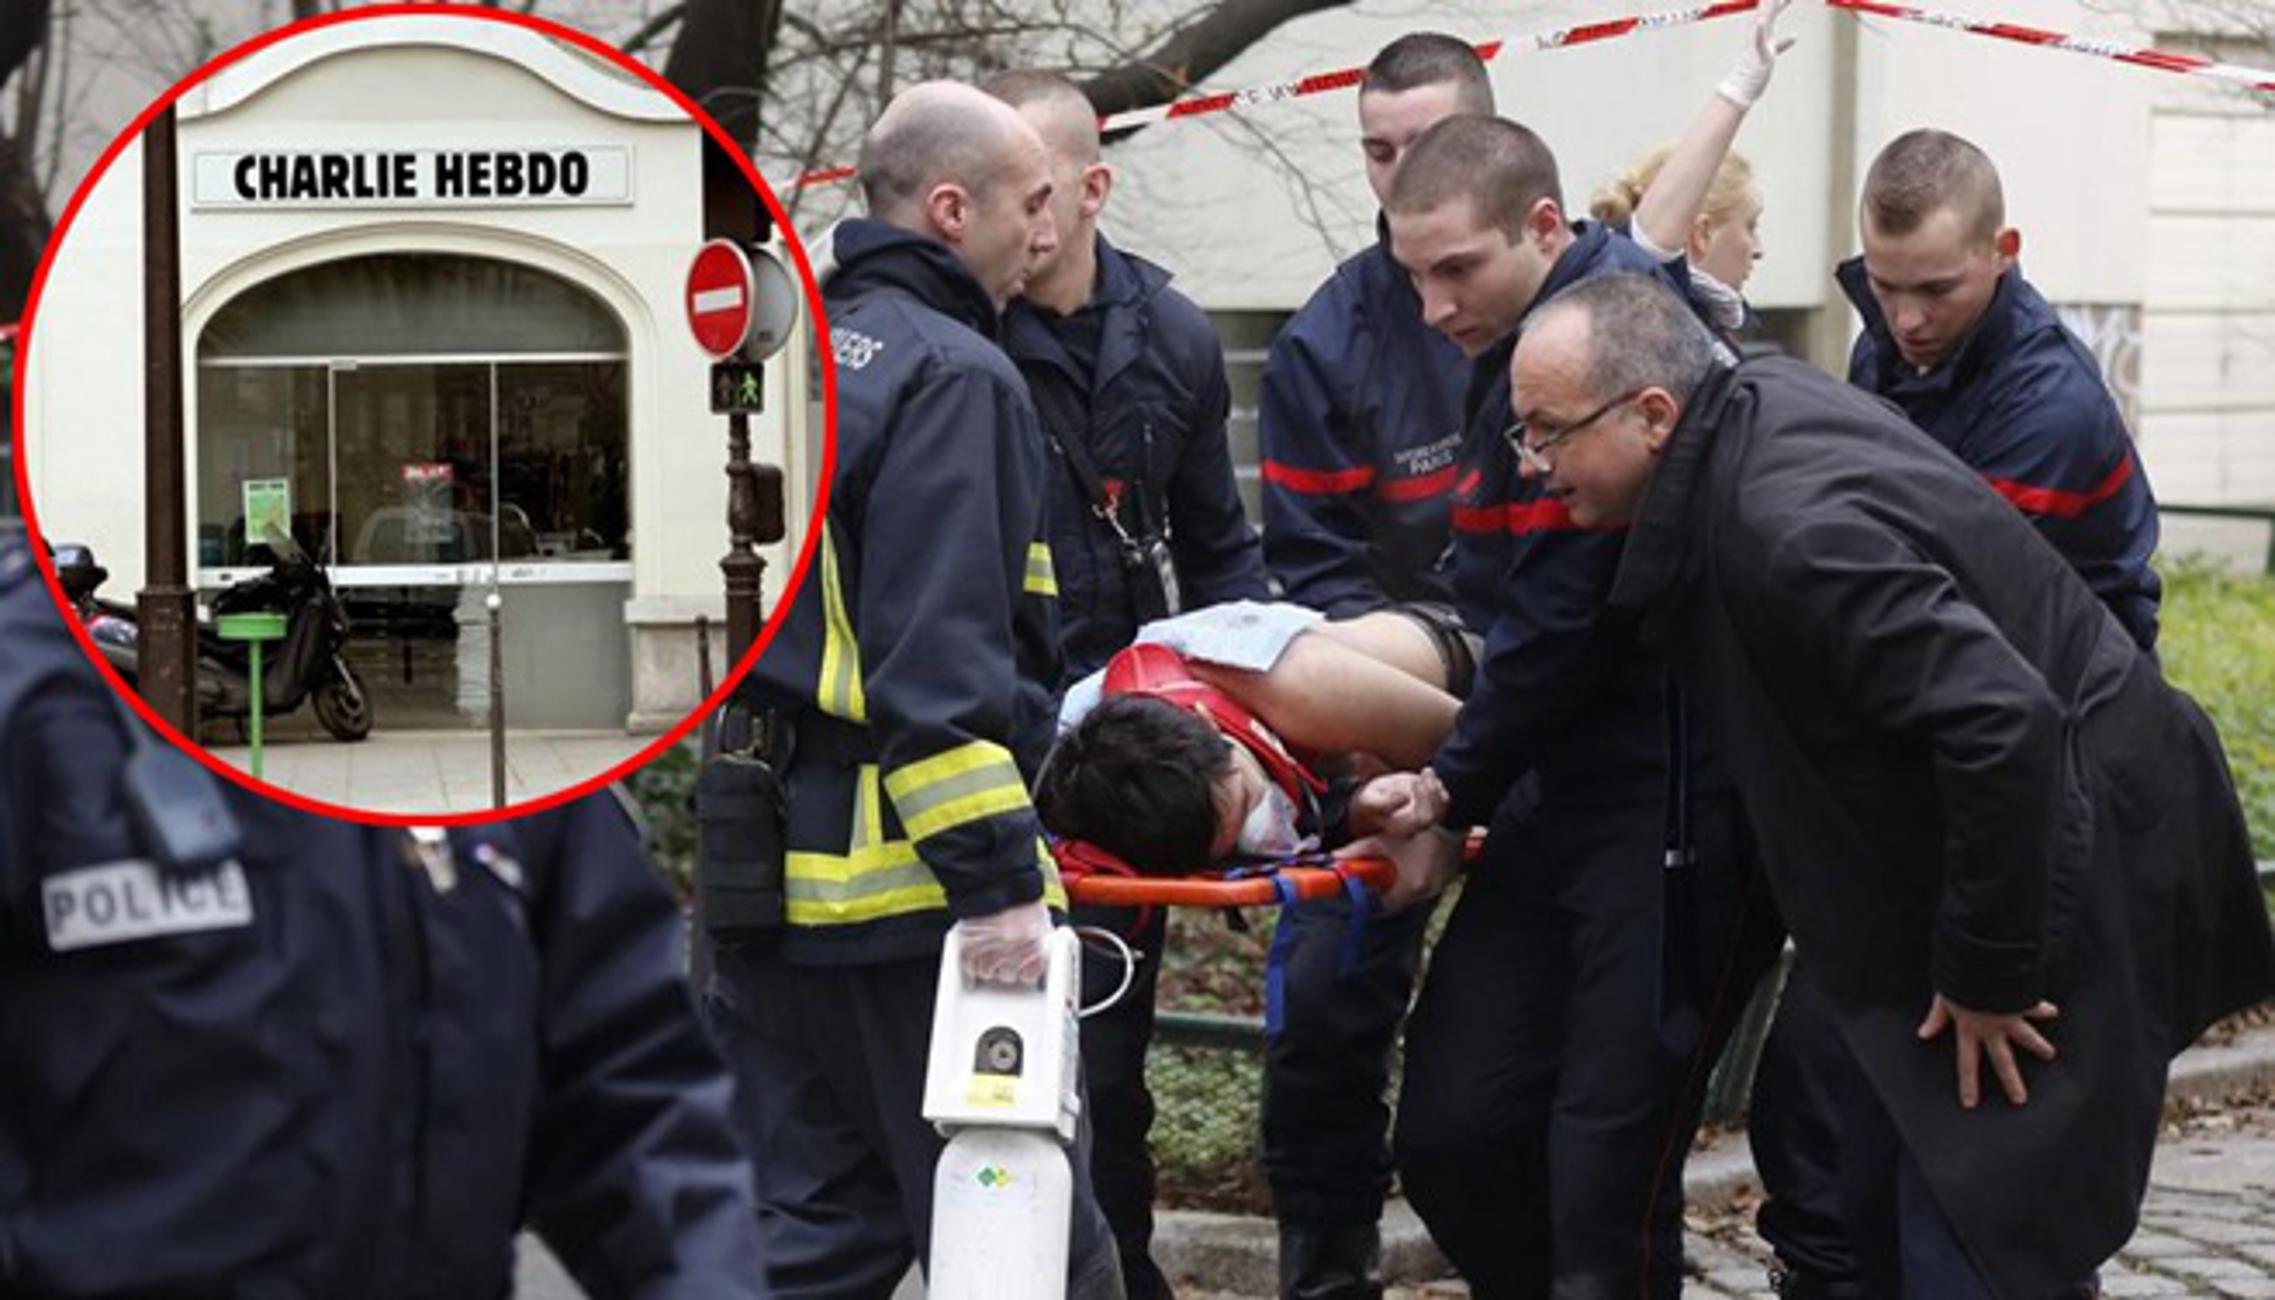 Prizor iz Pariza nakon napada na Charlie Hebdo časopis